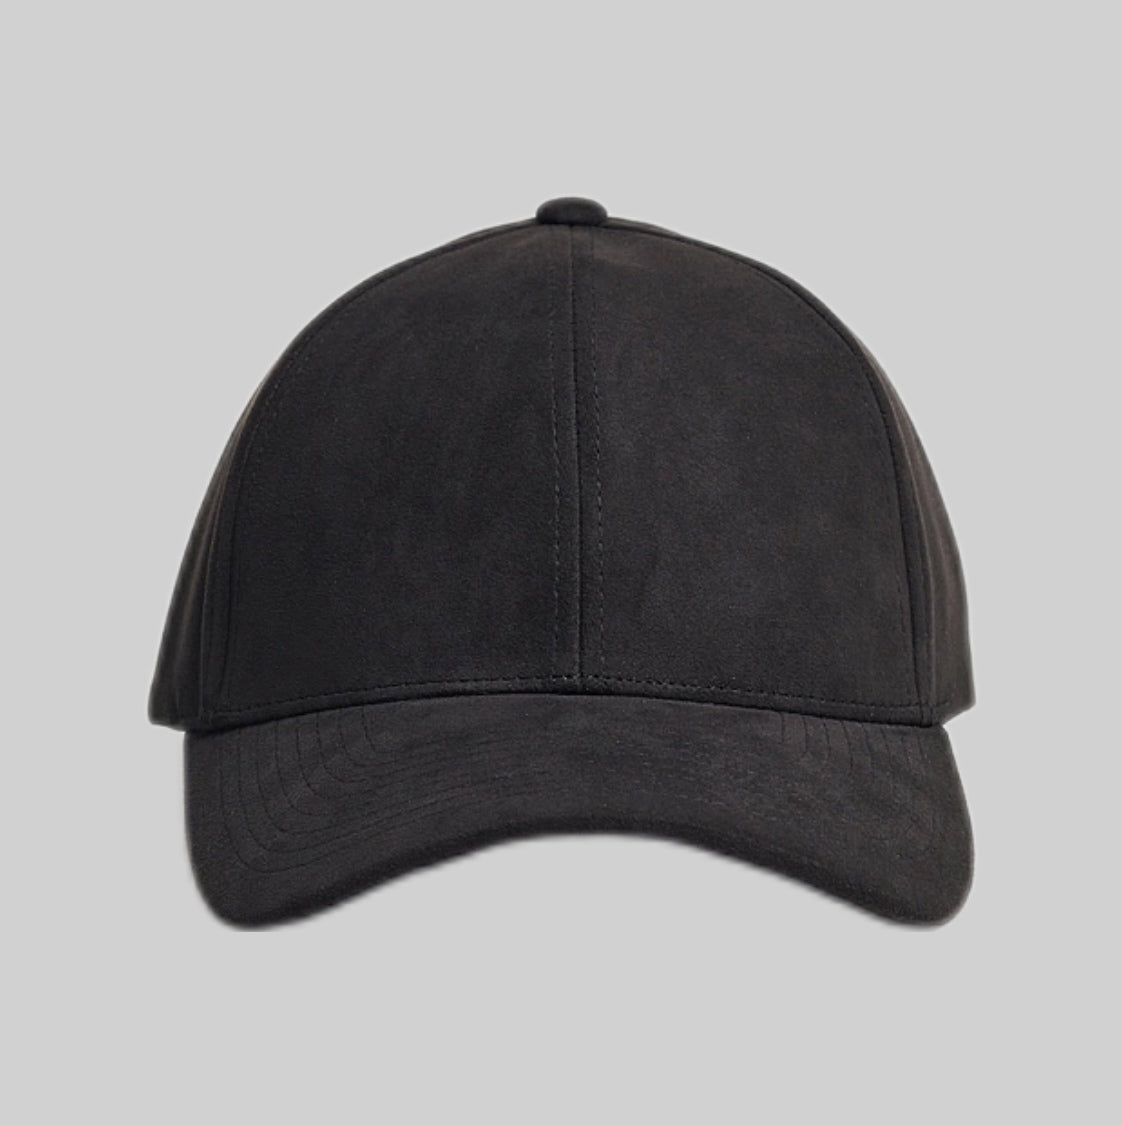 VARSITY HEADWEAR cap, black, frontside